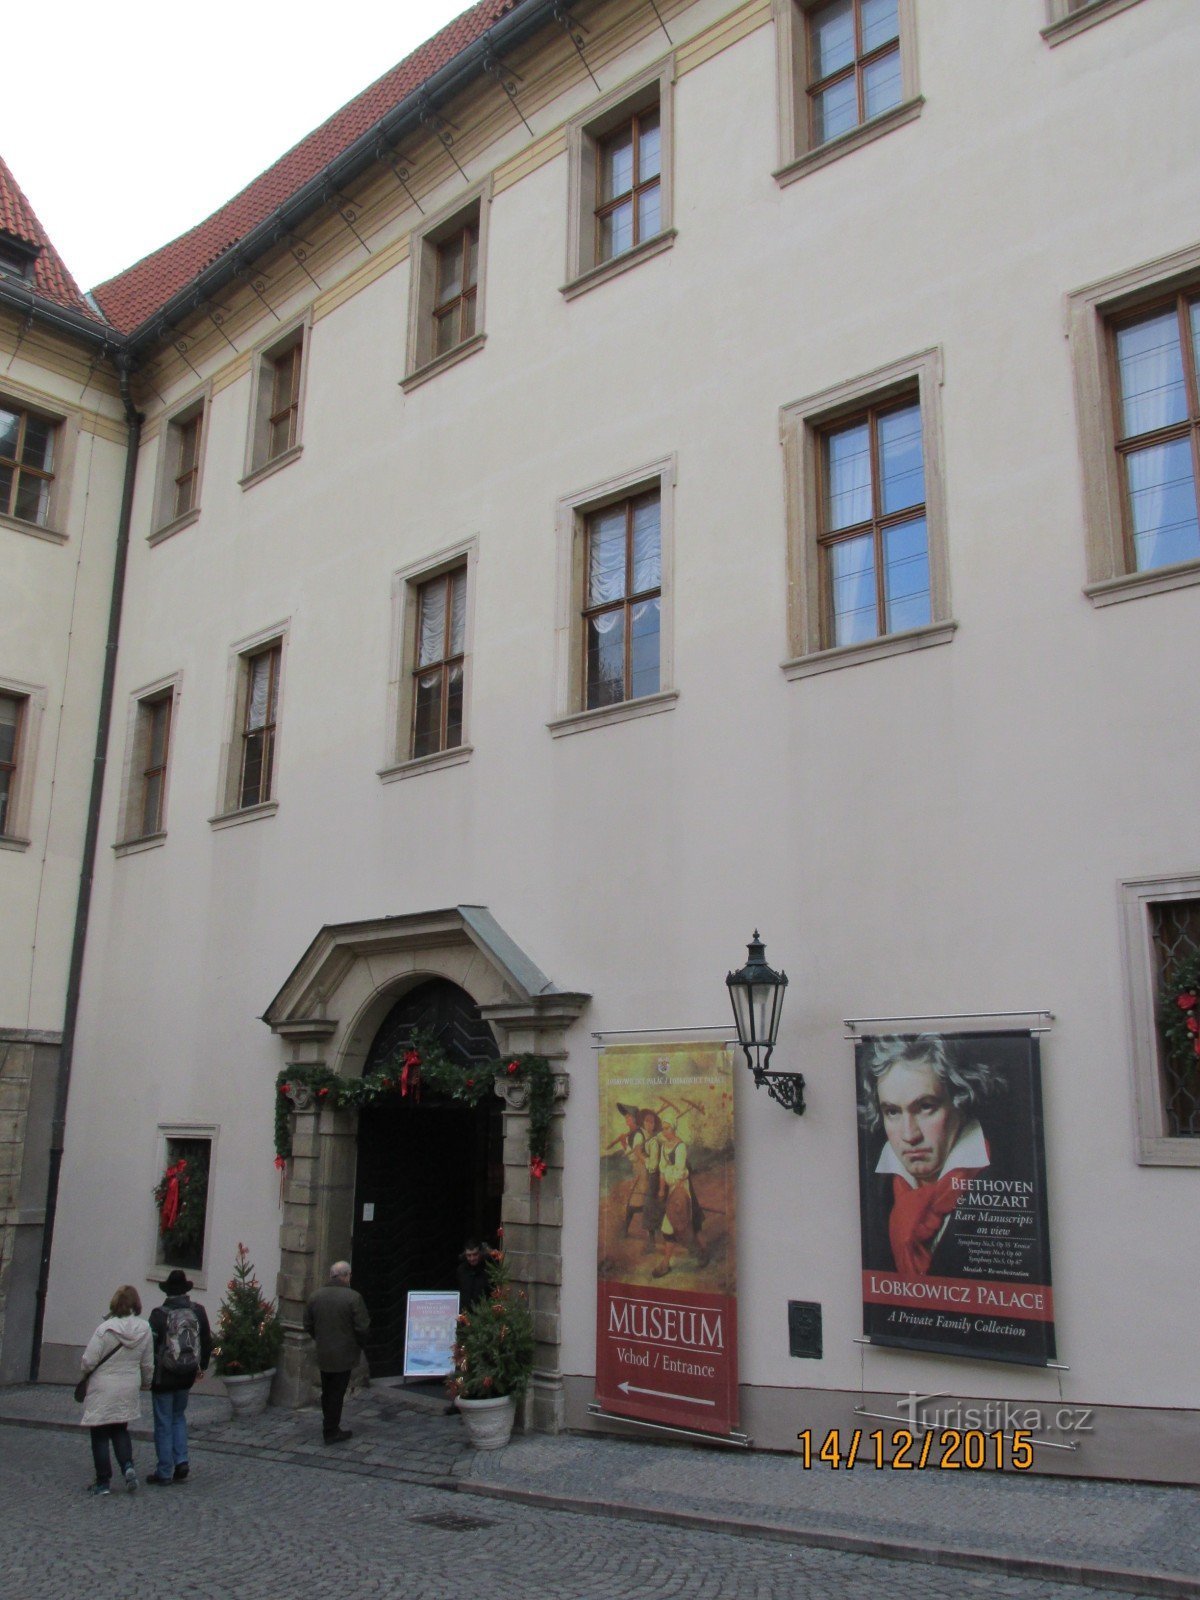 Bảo tàng trong Cung điện Lobkowicz